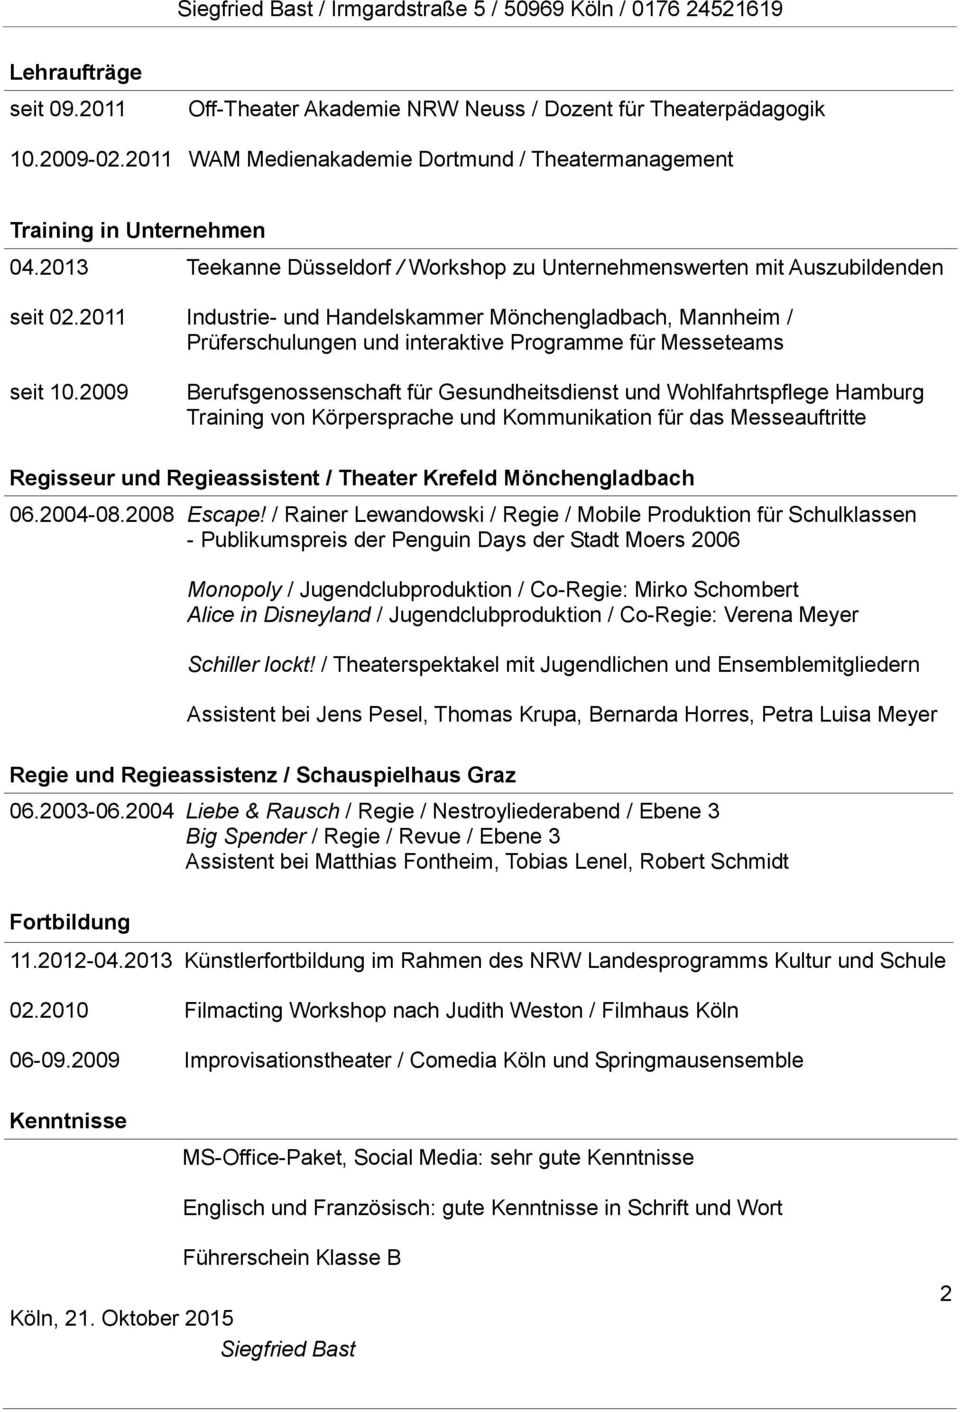 2009 Teekanne Düsseldorf / Workshop zu Unternehmenswerten mit Auszubildenden Industrie- und Handelskammer Mönchengladbach, Mannheim / Prüferschulungen und interaktive Programme für Messeteams